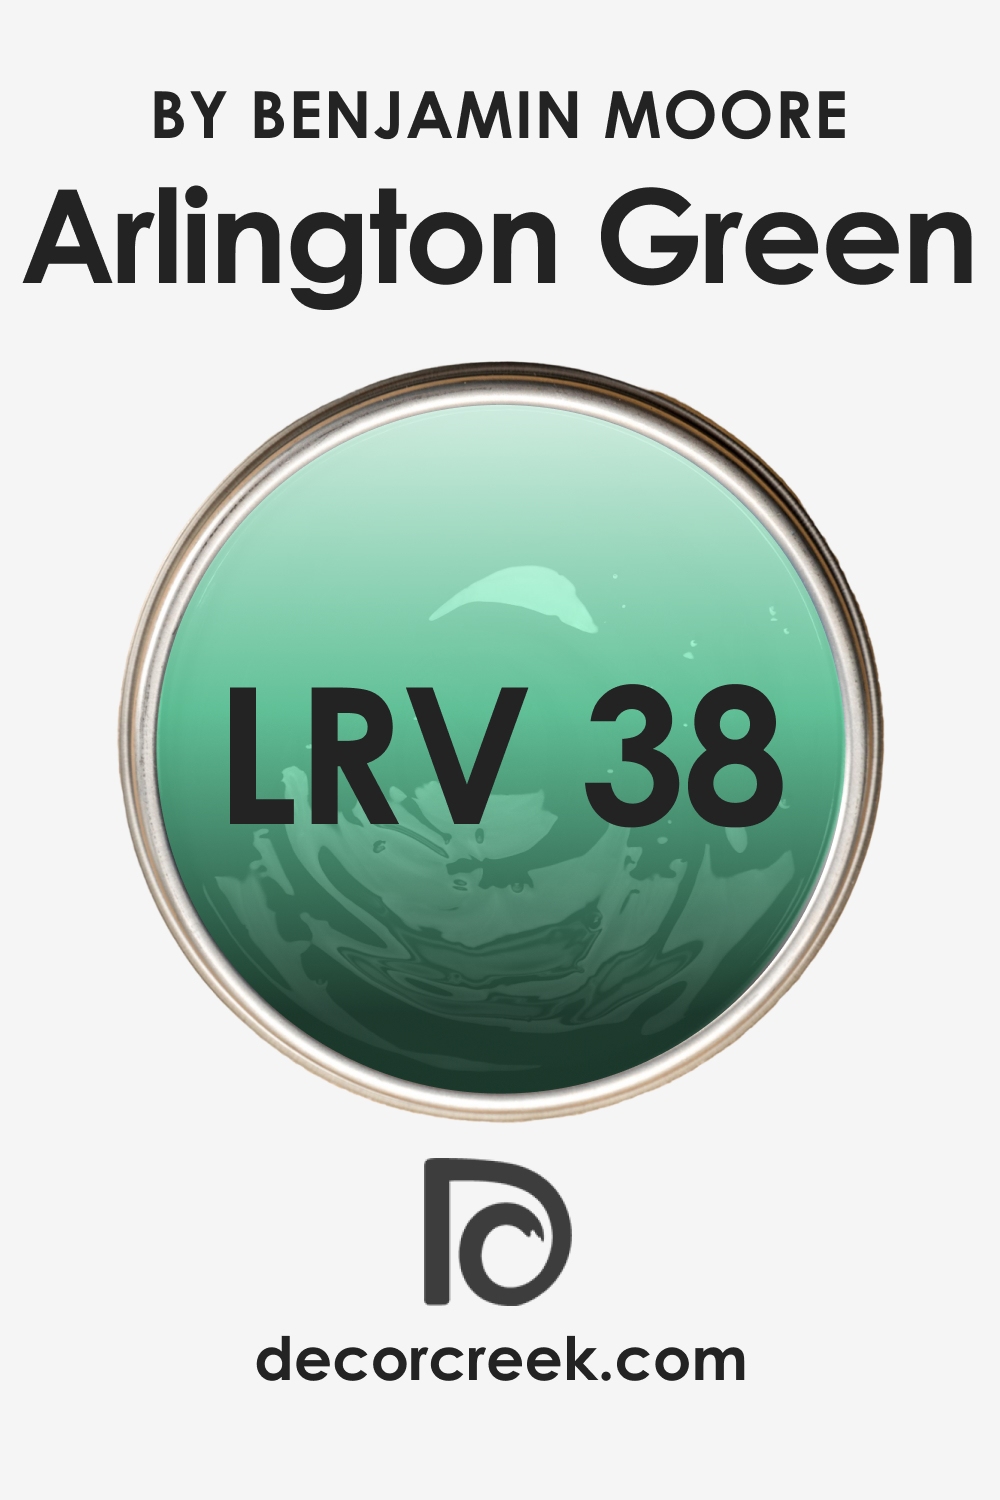 LRV of Arlington Green 580